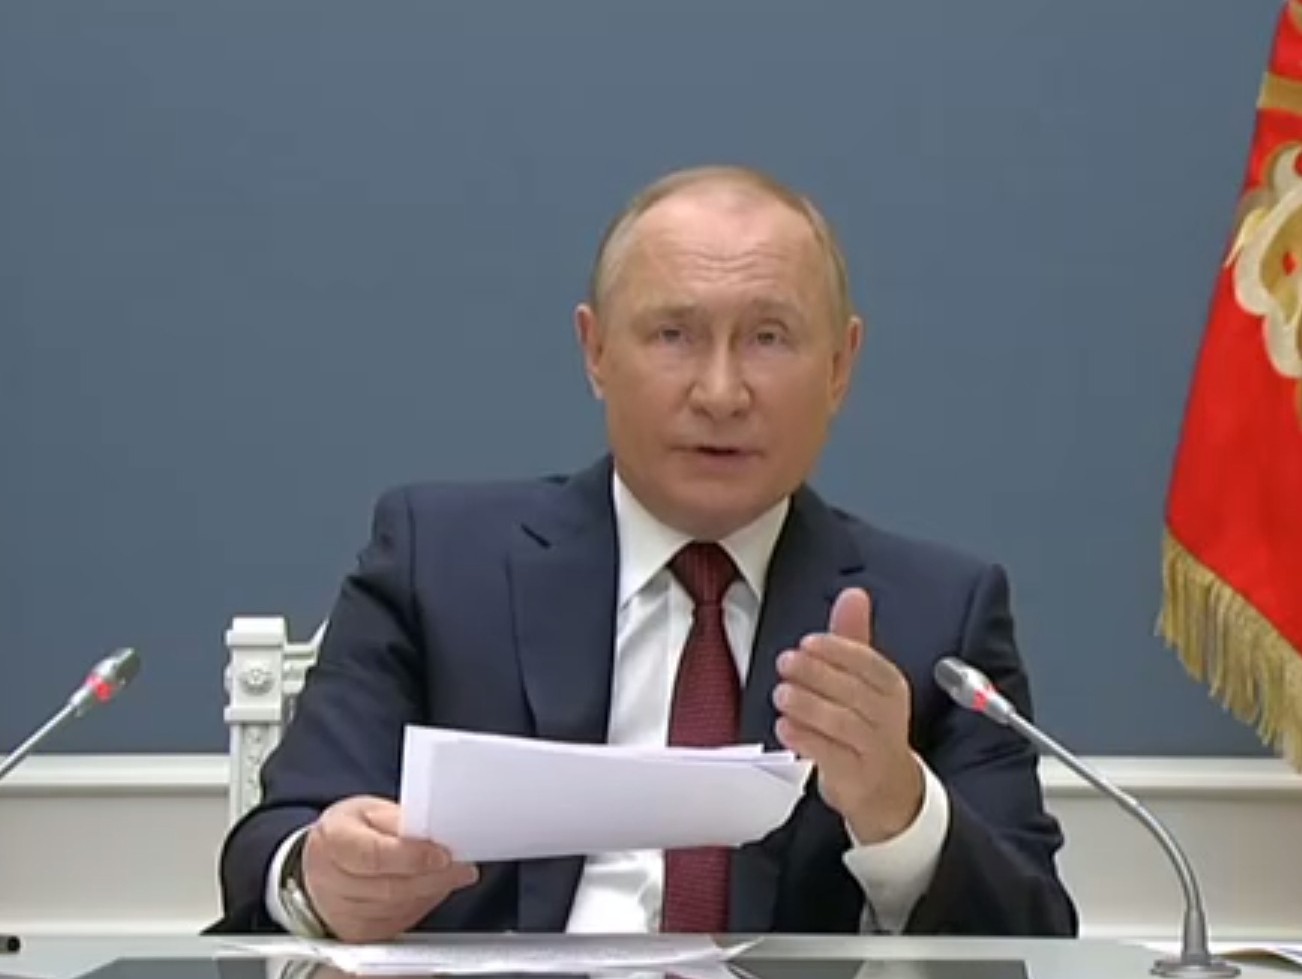 скрин с видео с сайта http://kremlin.ru/